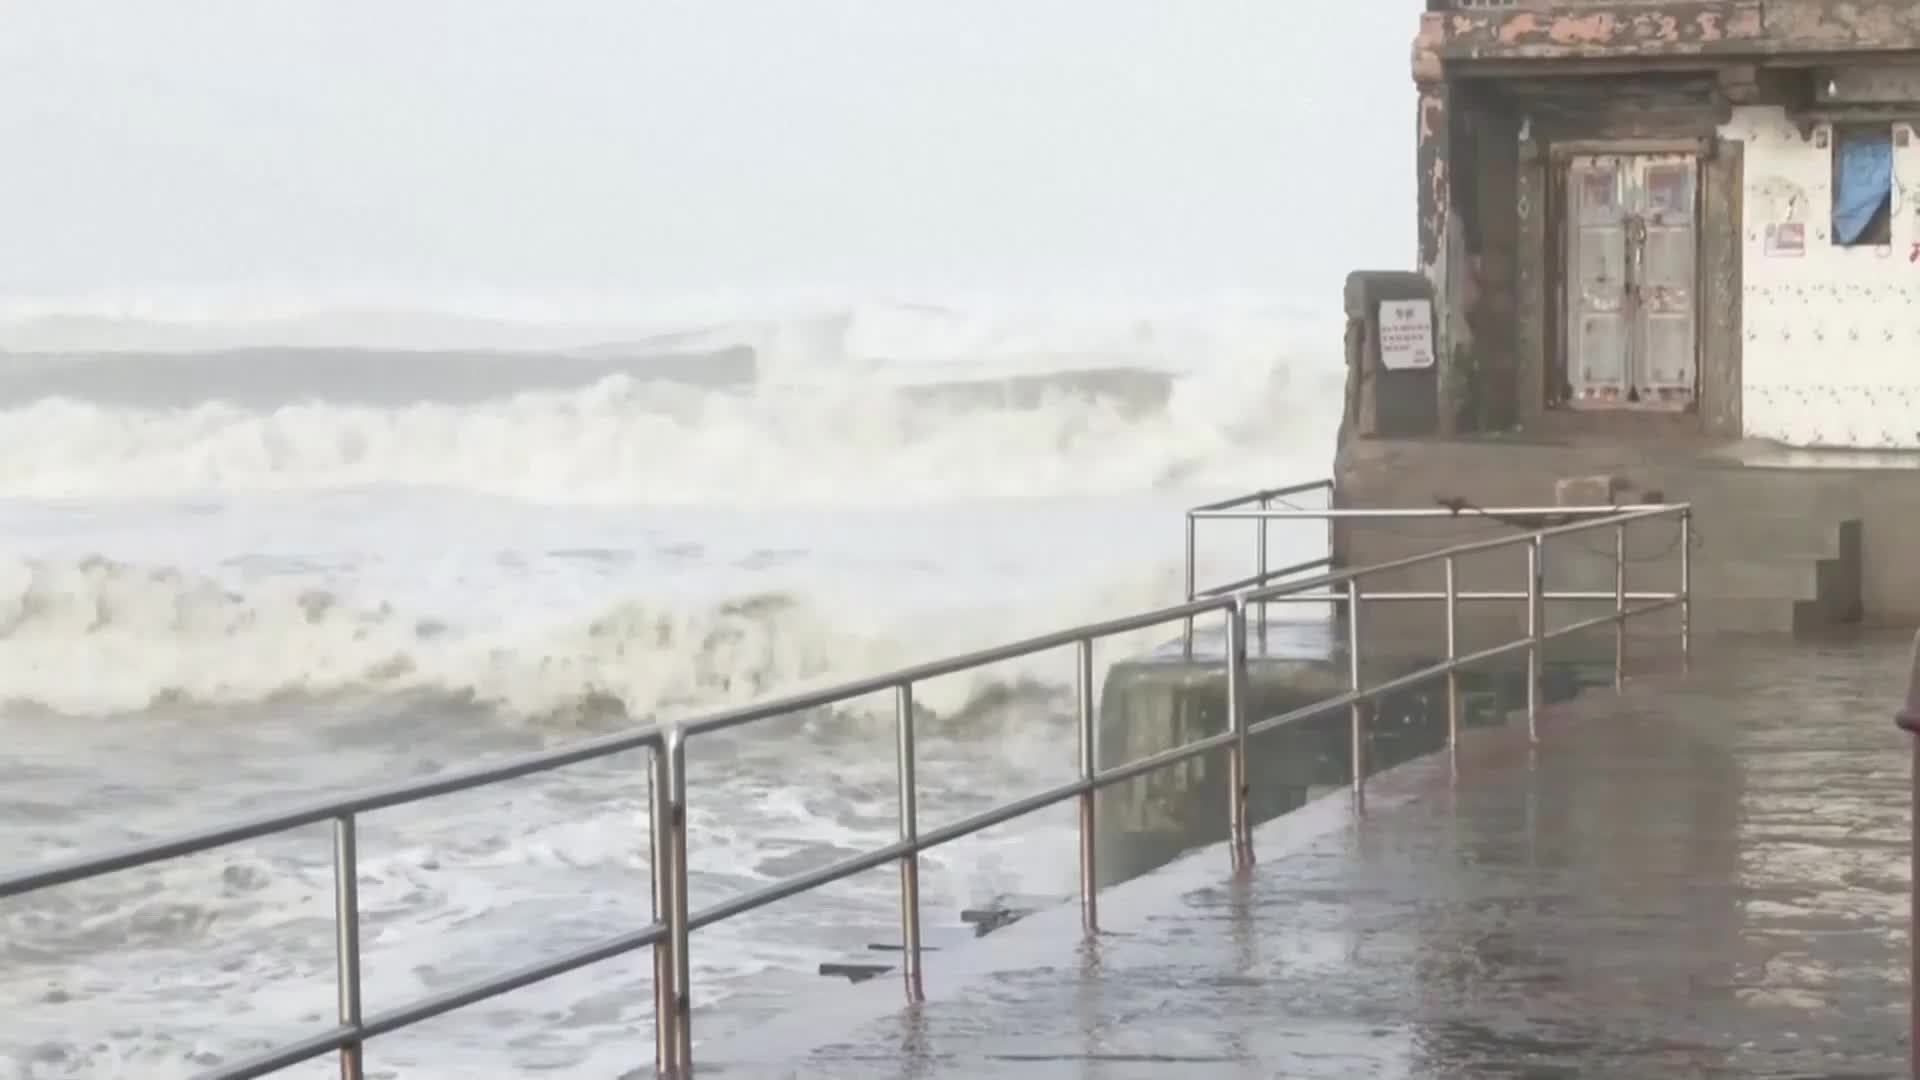 ЗРЕЛИЩНО: Огромни вълни удариха западните брегове на Индия